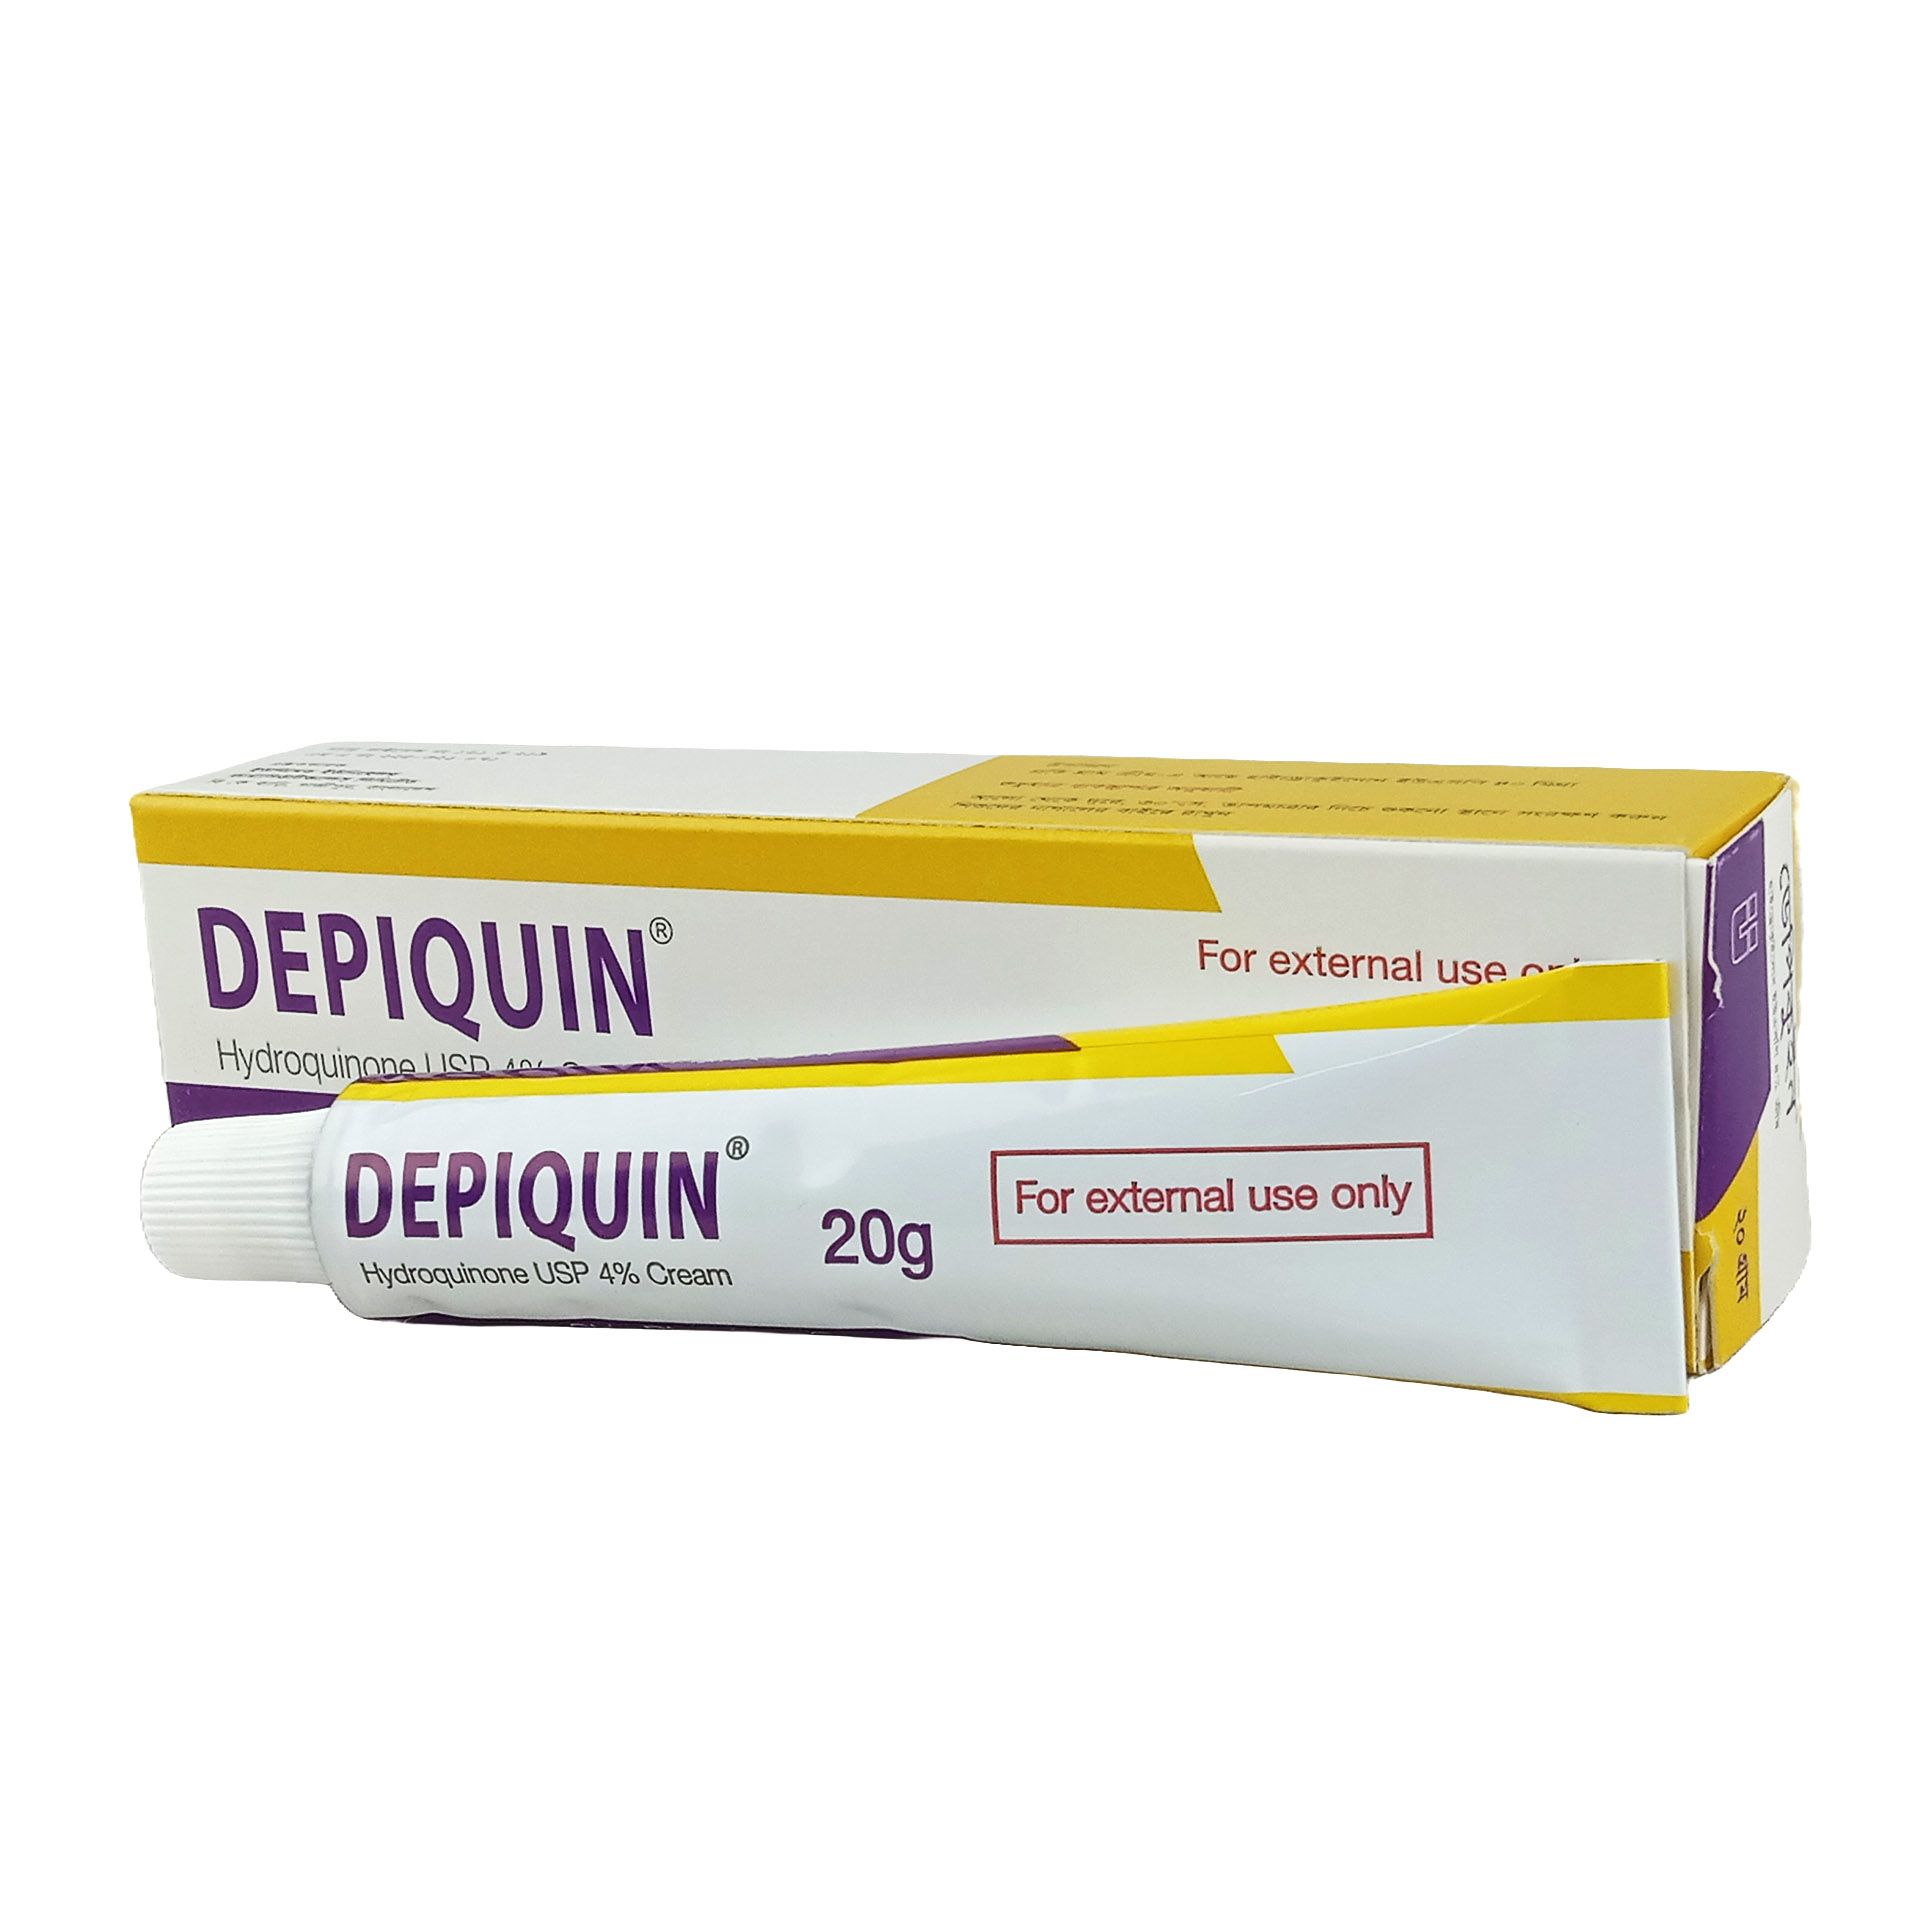 Depiquin 4% Cream